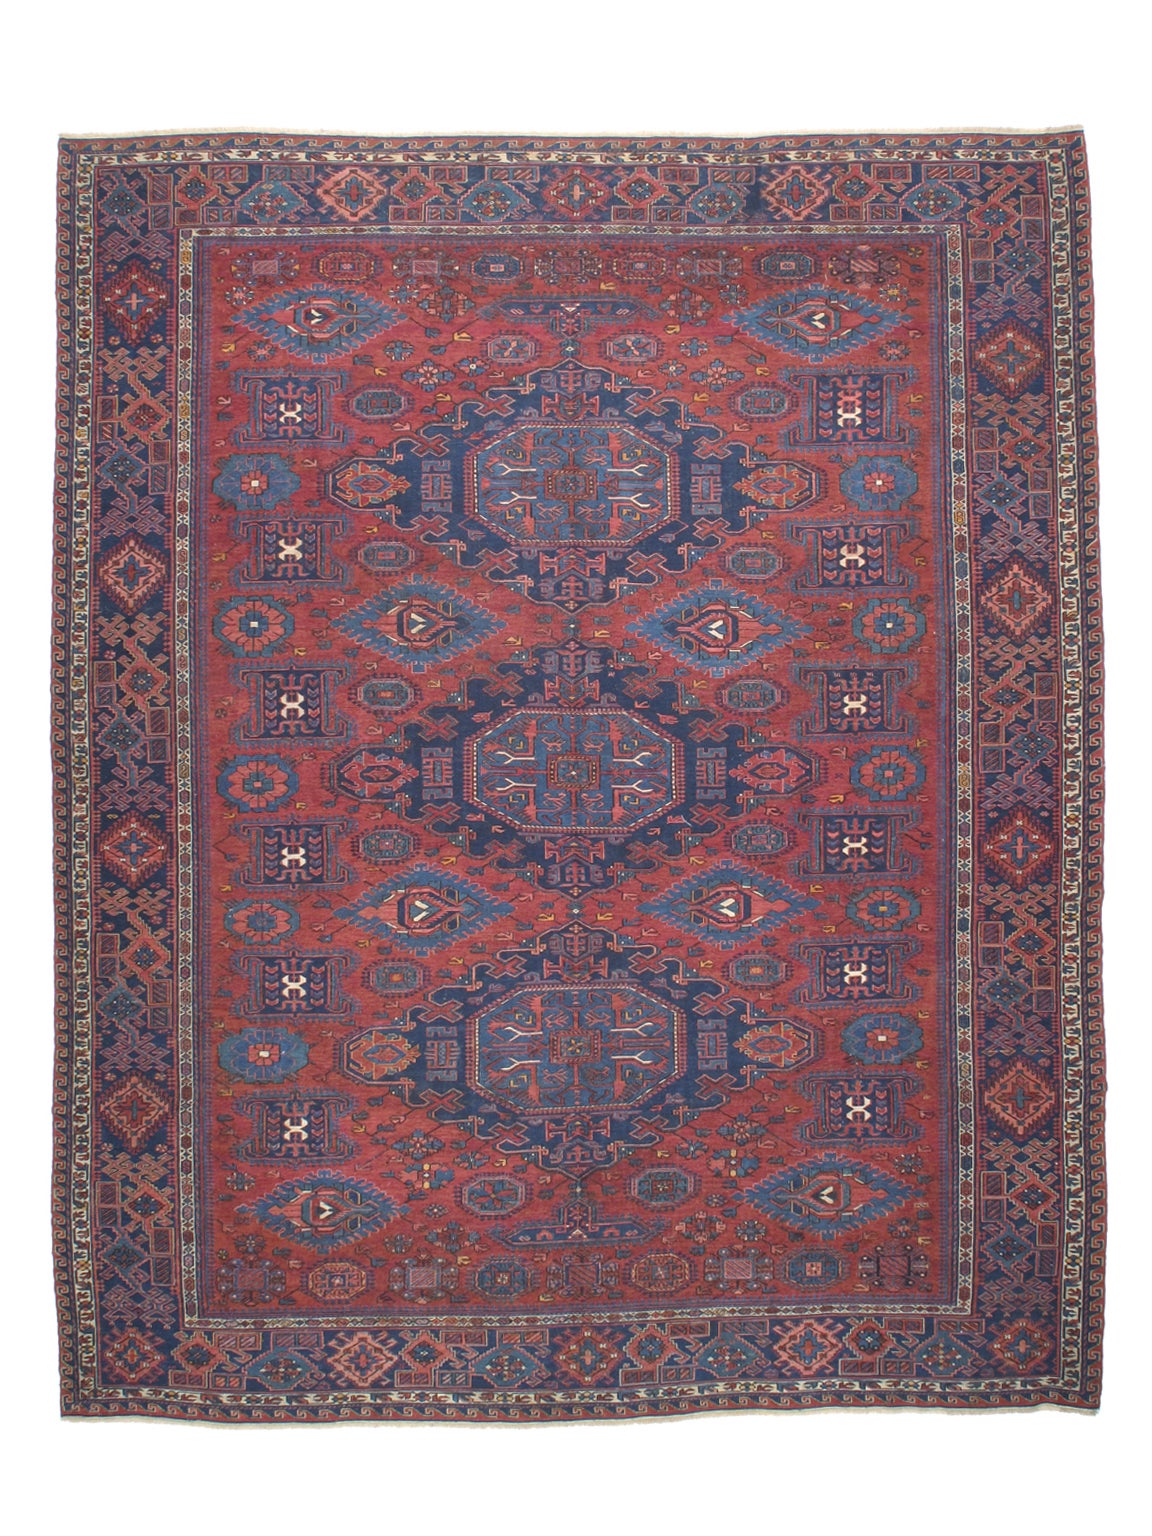 Antique Sumak Carpet